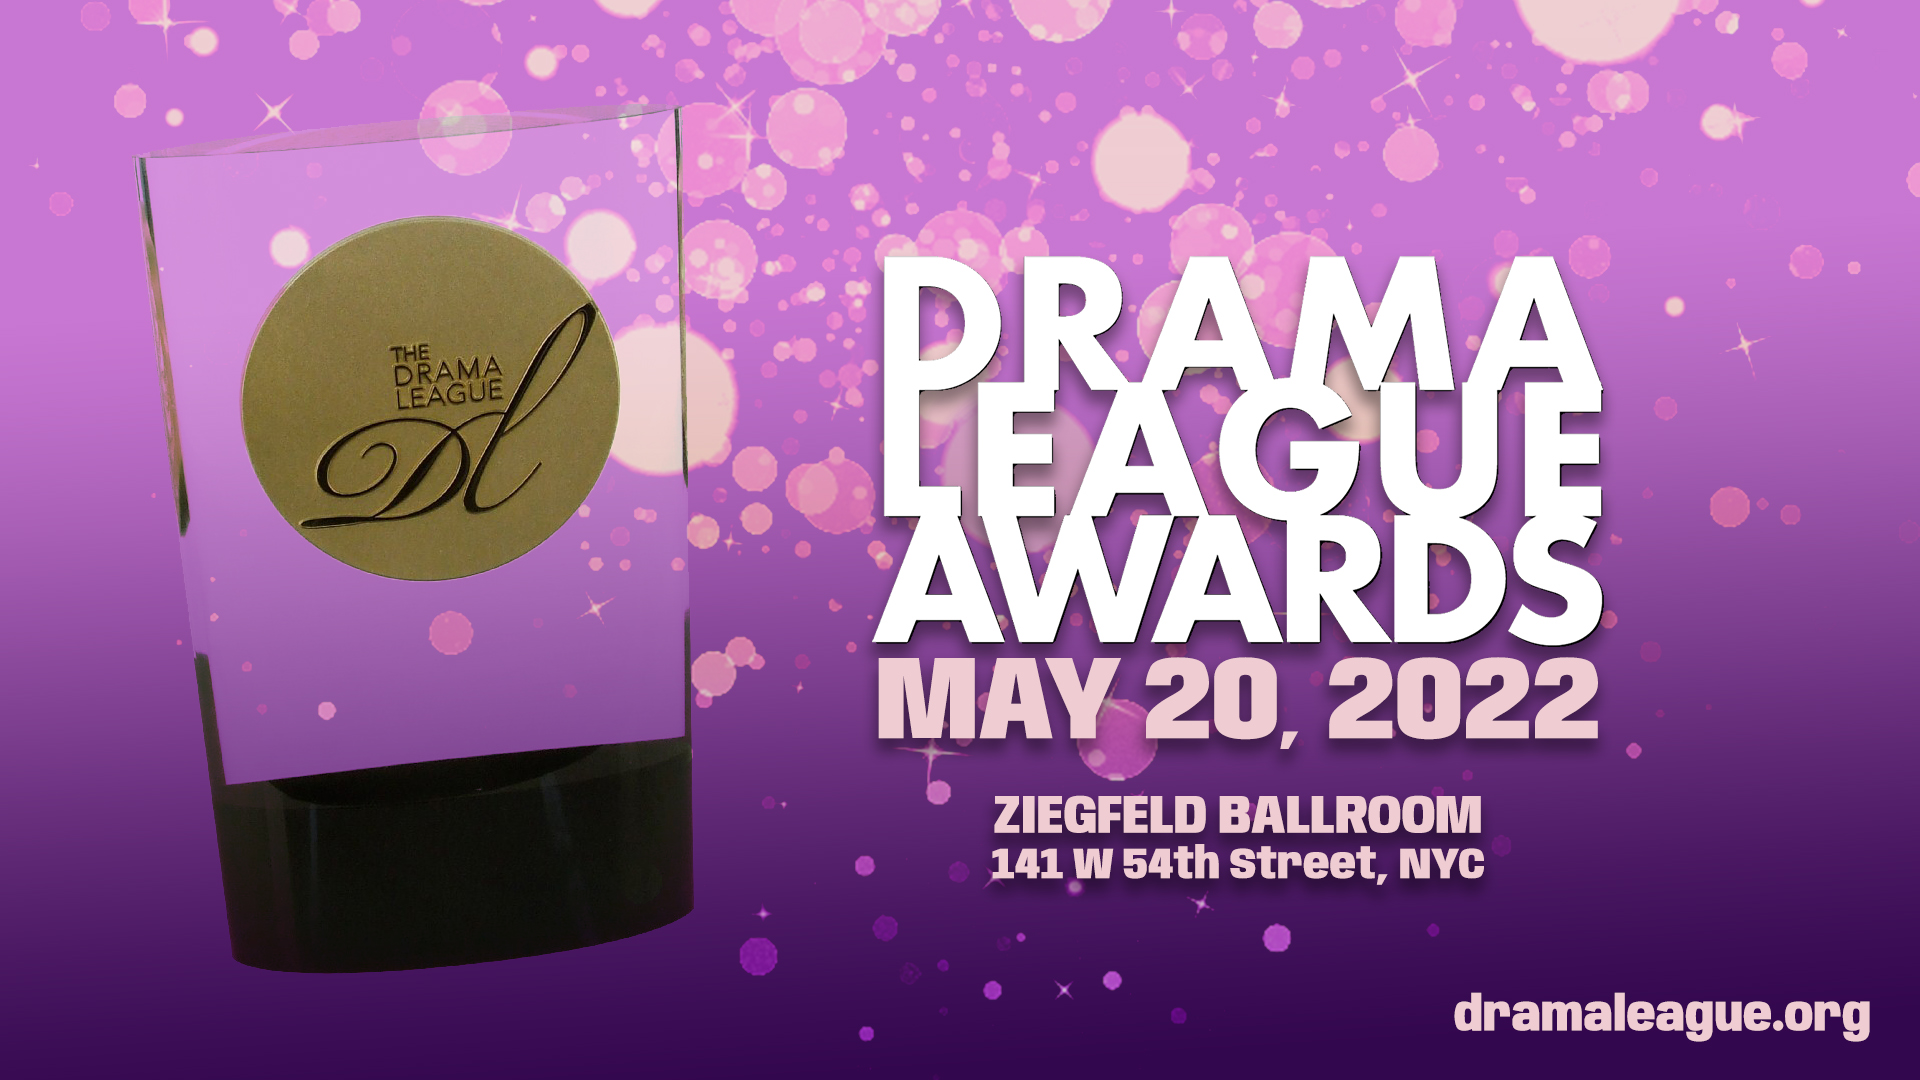 Awards The Drama League